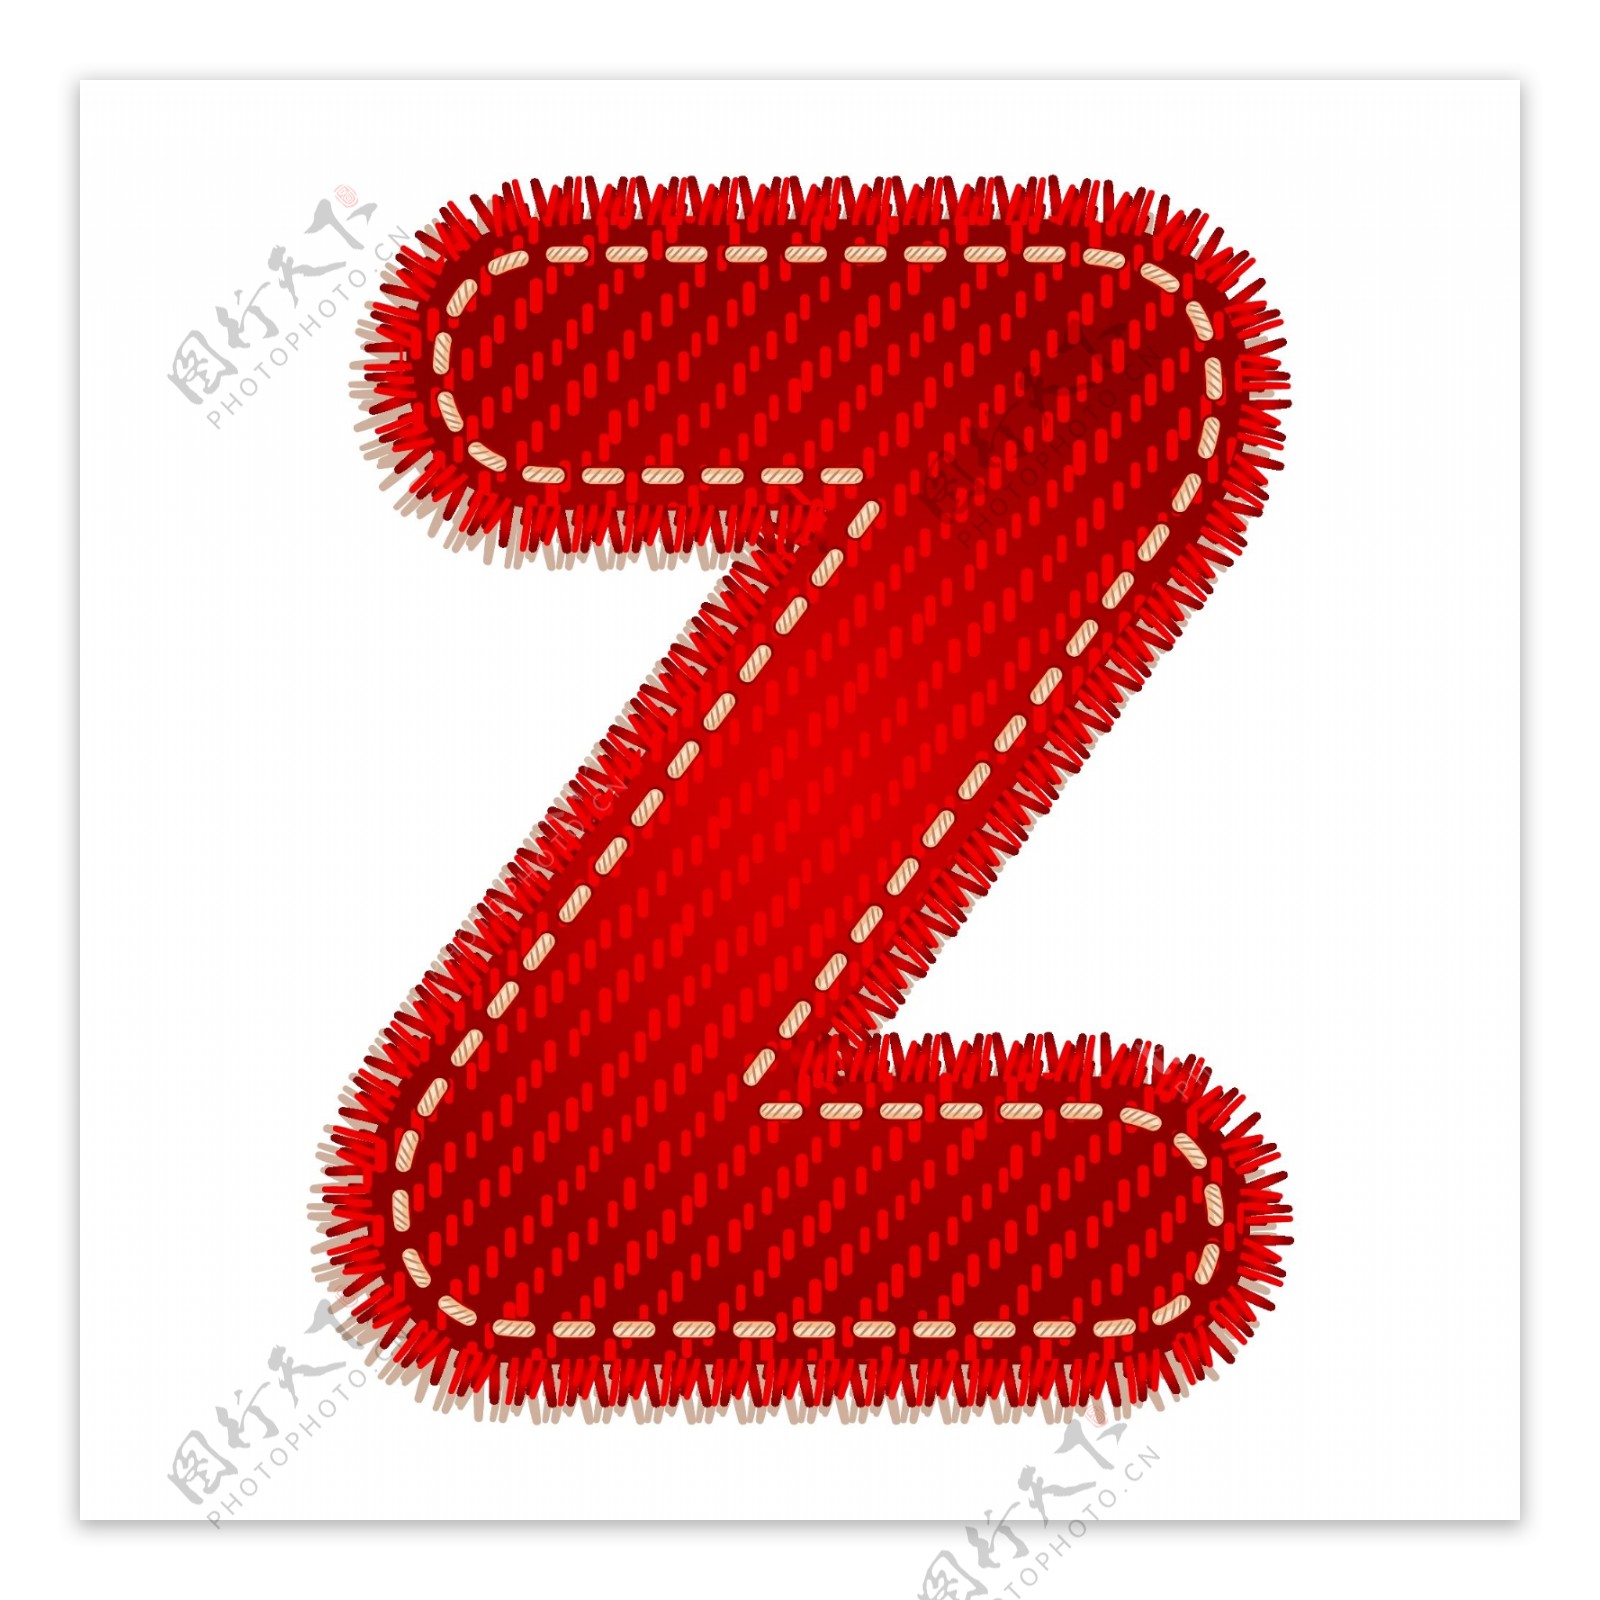 红色字母Z